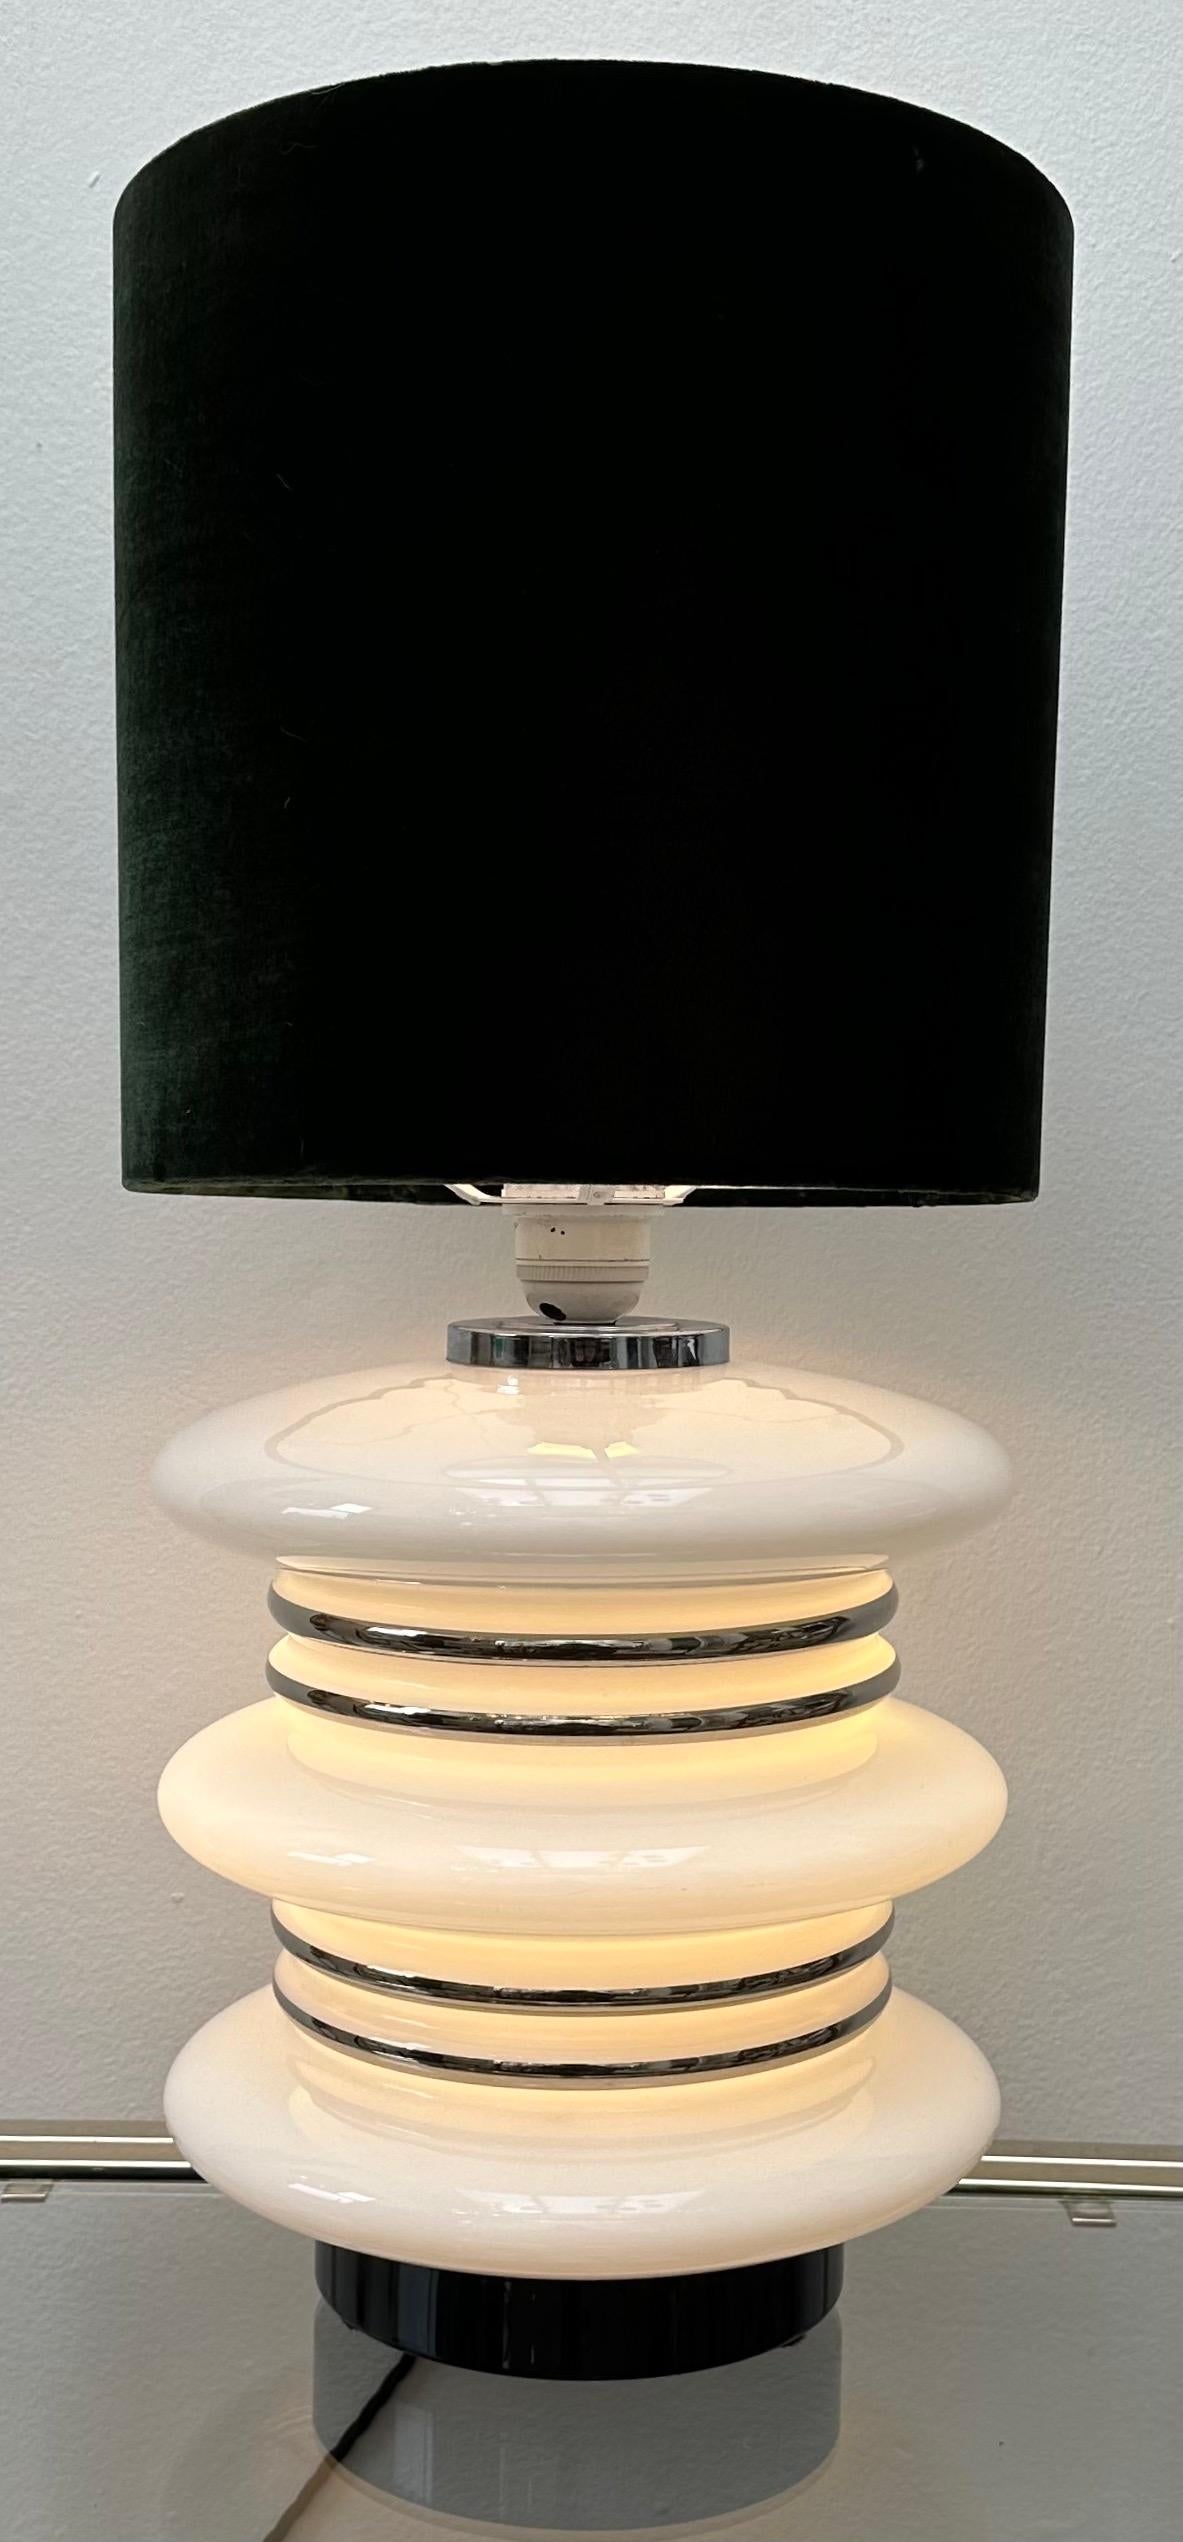 Lampe de table allemande des années 1970, futuriste, space-age, en verre opale blanc et chrome, attribuée à Leclaire & Schäfer. Le pied de lampe éclairé nécessite deux ampoules à vis E27 à l'intérieur, chacune pointant dans des directions opposées,